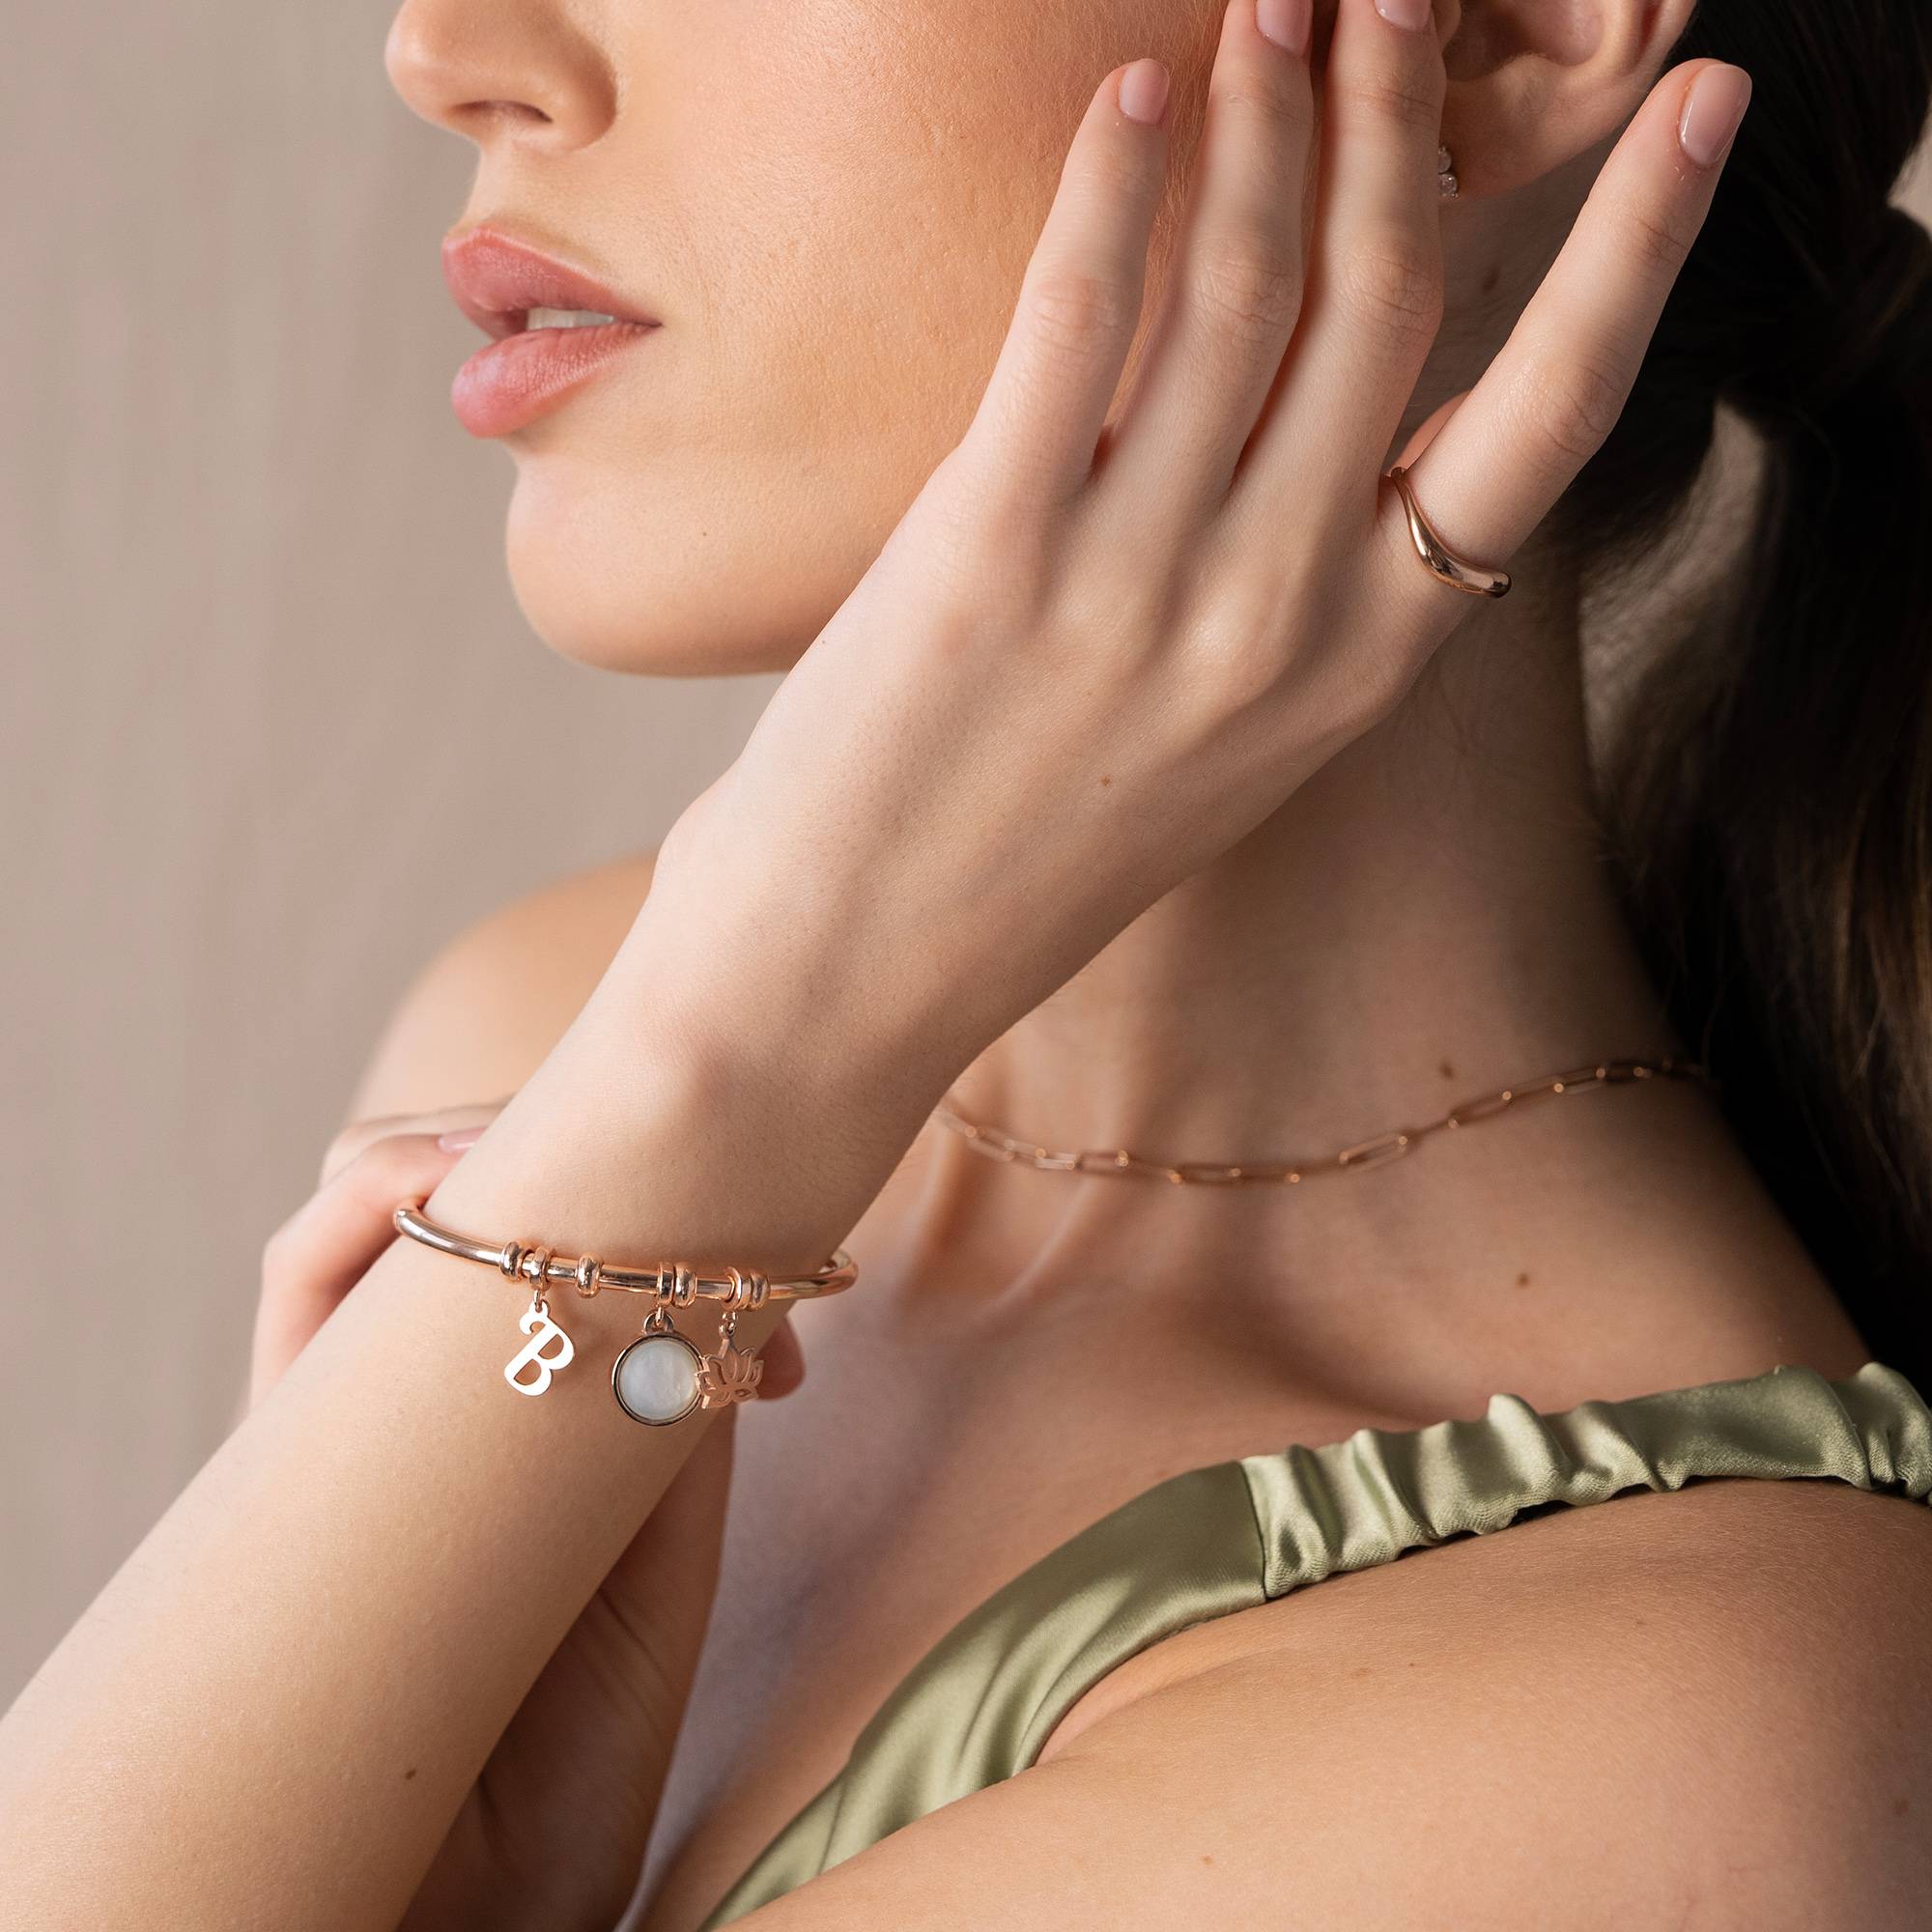 18k Rosé Vergulde Symbolische Initiaal Bangle Armband met Halfedelsteen-1 Productfoto